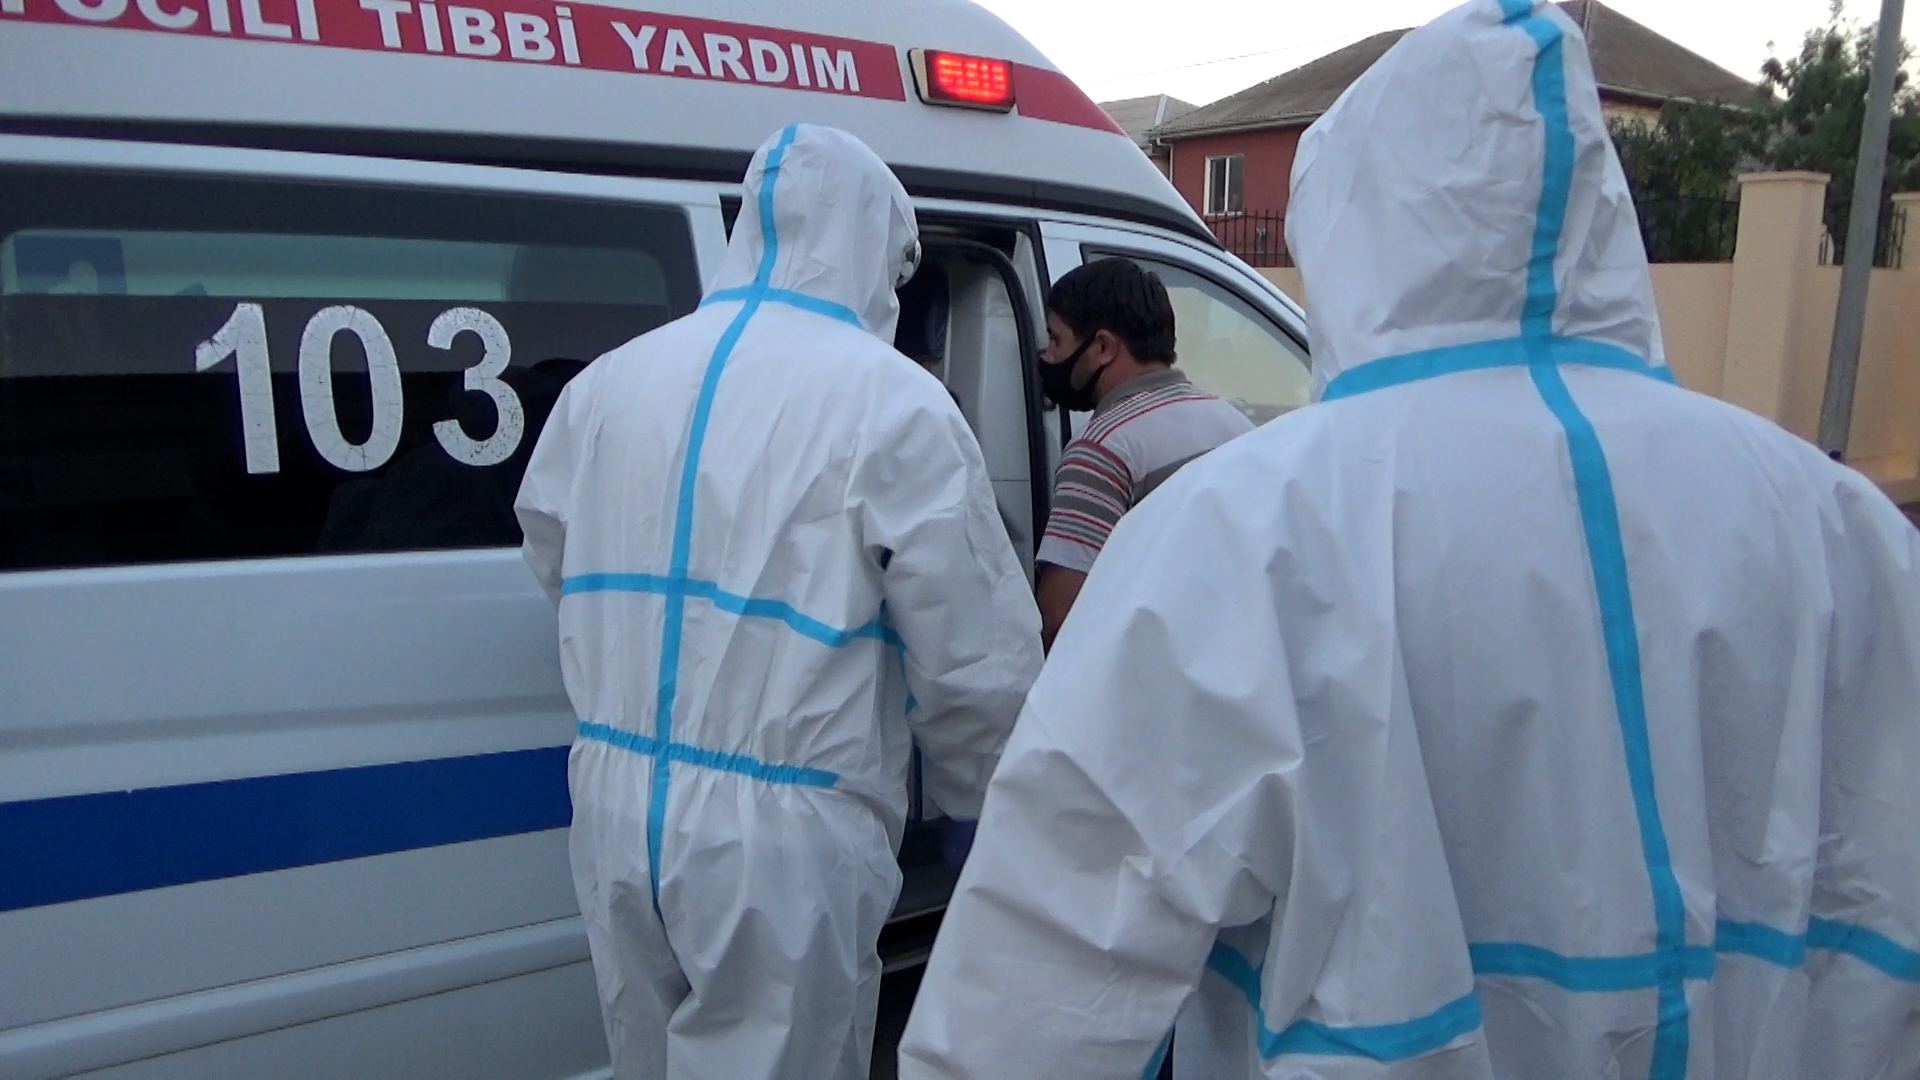 Ötən gün evini tərk edən 18 koronavirus xəstəsi saxlanıldı